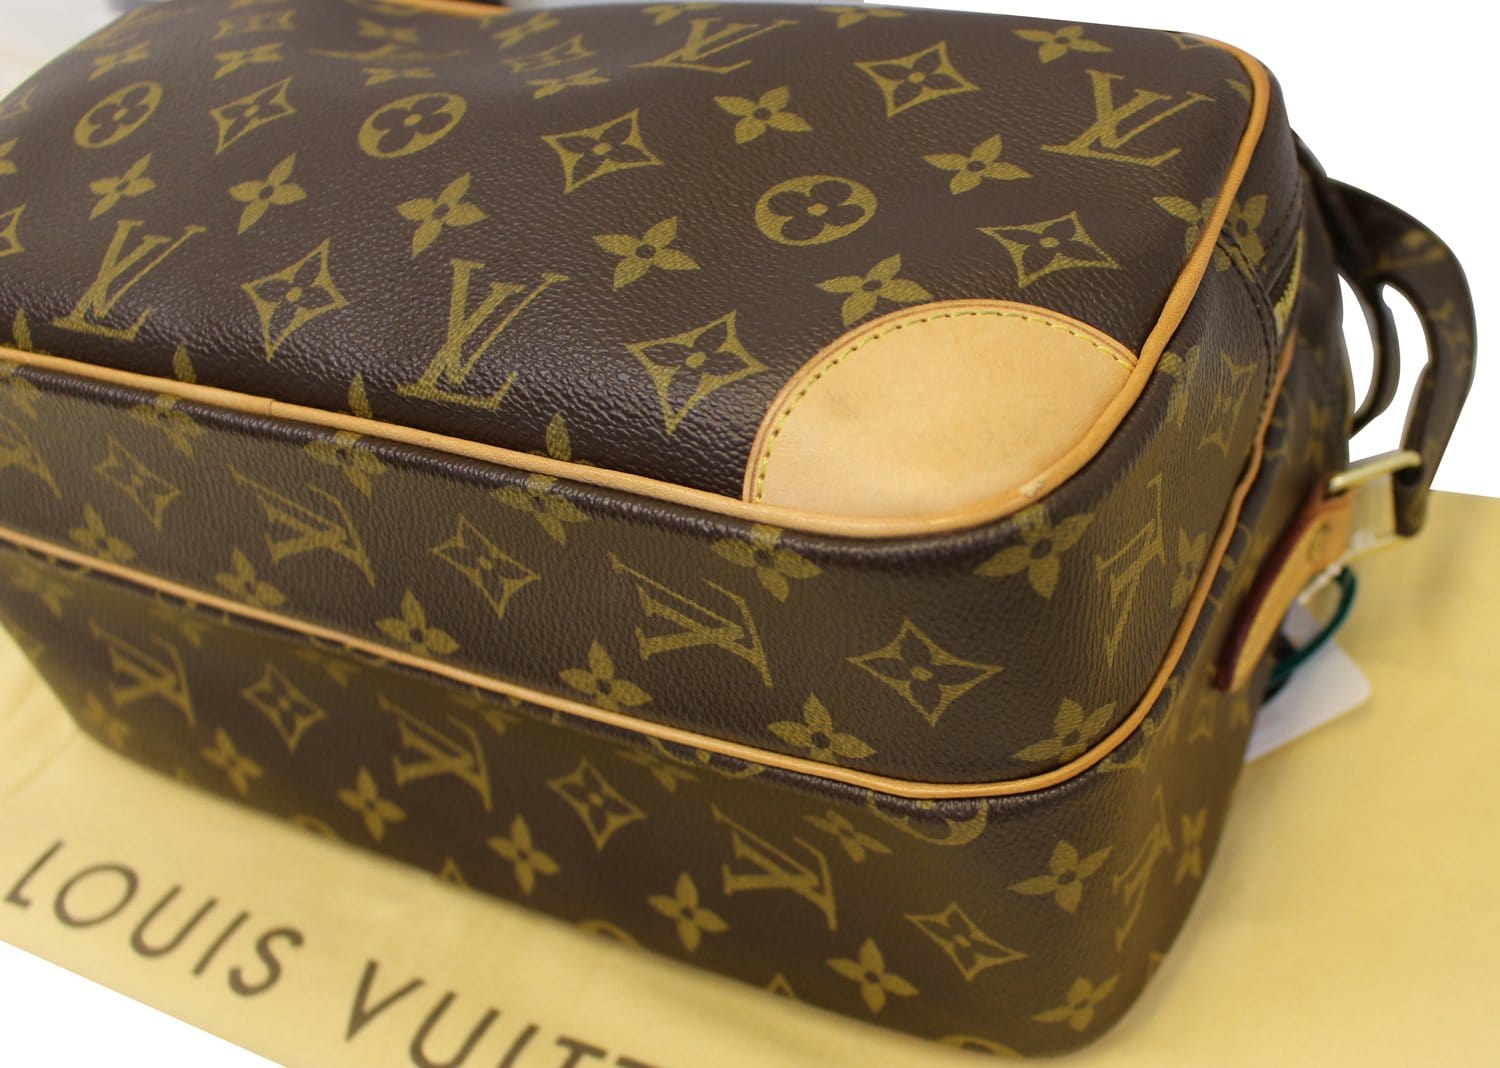 Louis Vuitton Nile Crossbody Bag